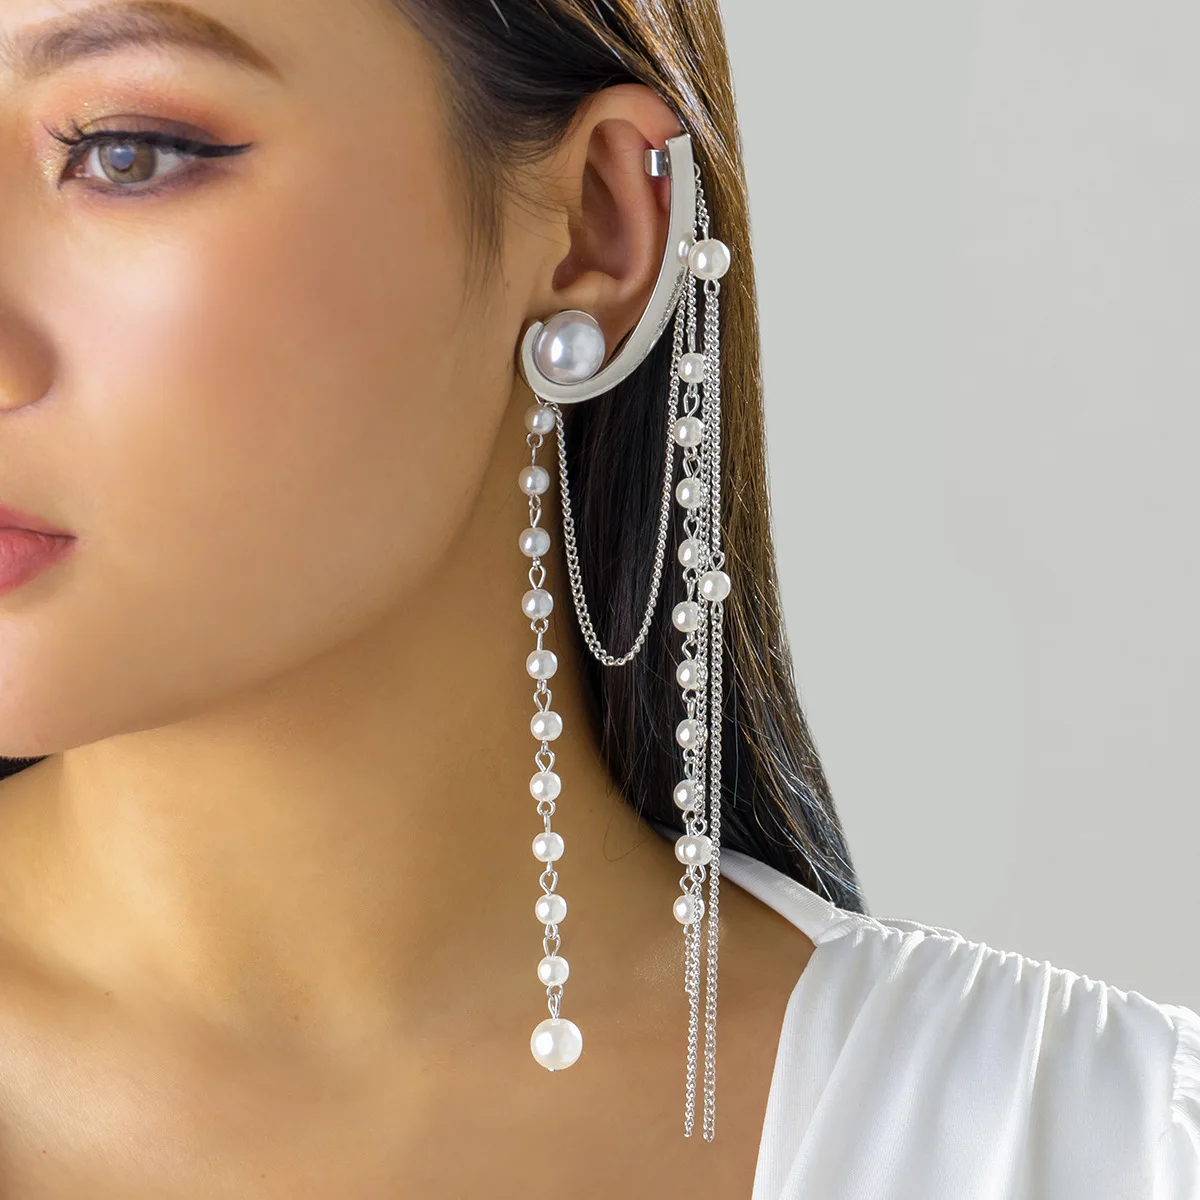 Women Long Tassel Imitation Pearl Ear Cuff Jewelry Ear Hook